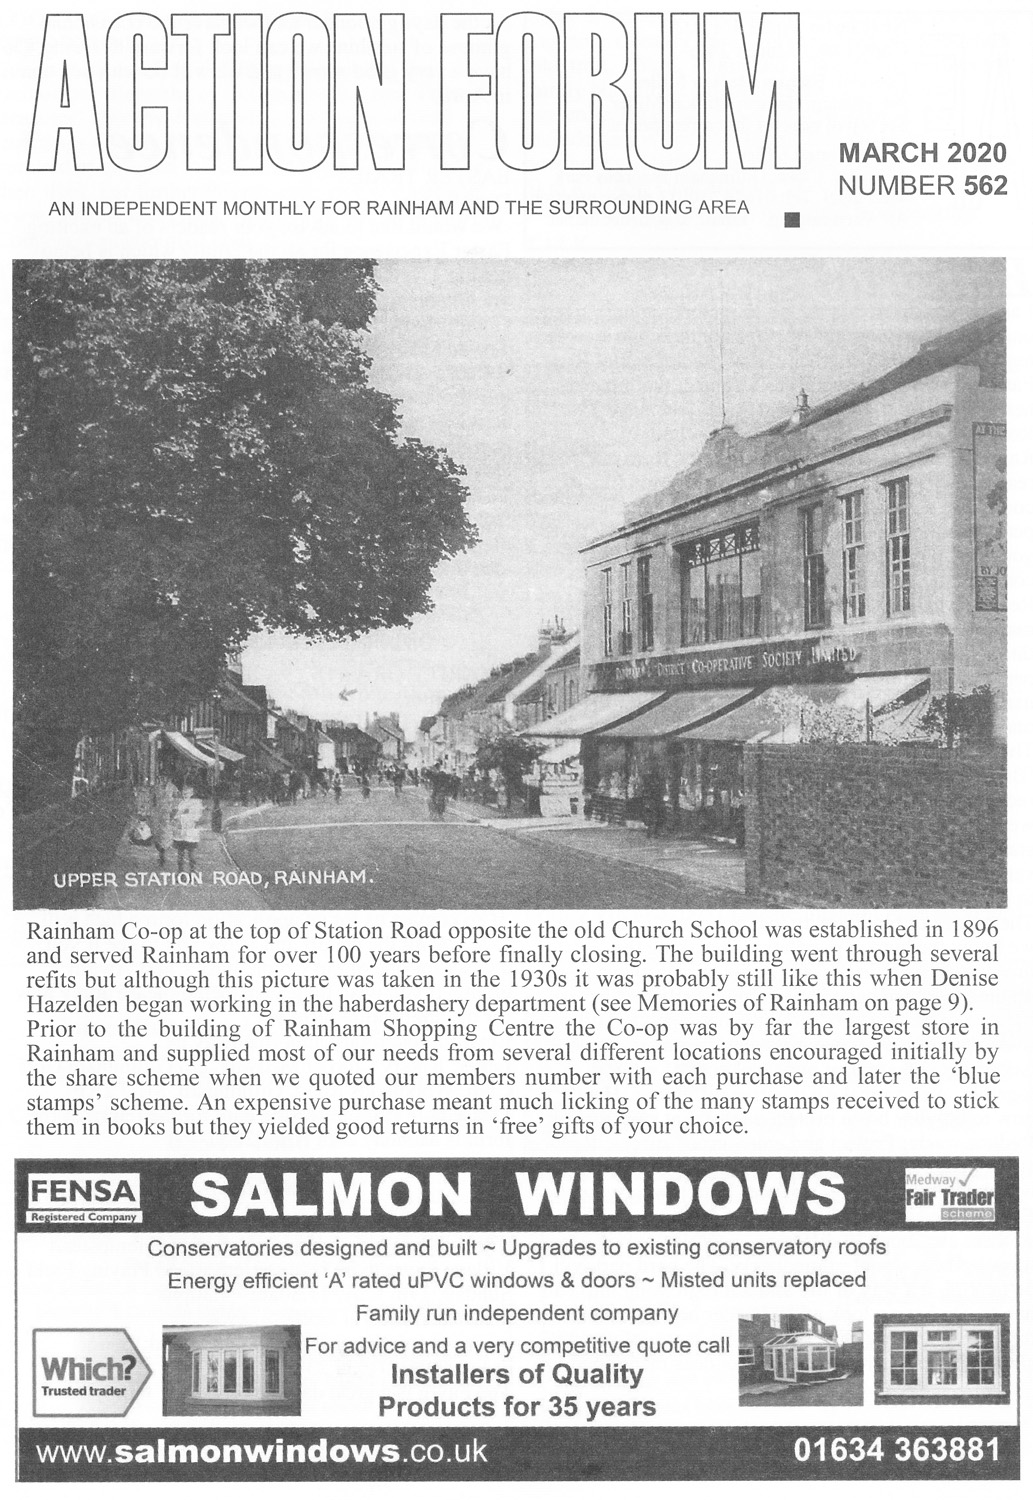 Cover photo of Rainham Cooperative Station Road 1930